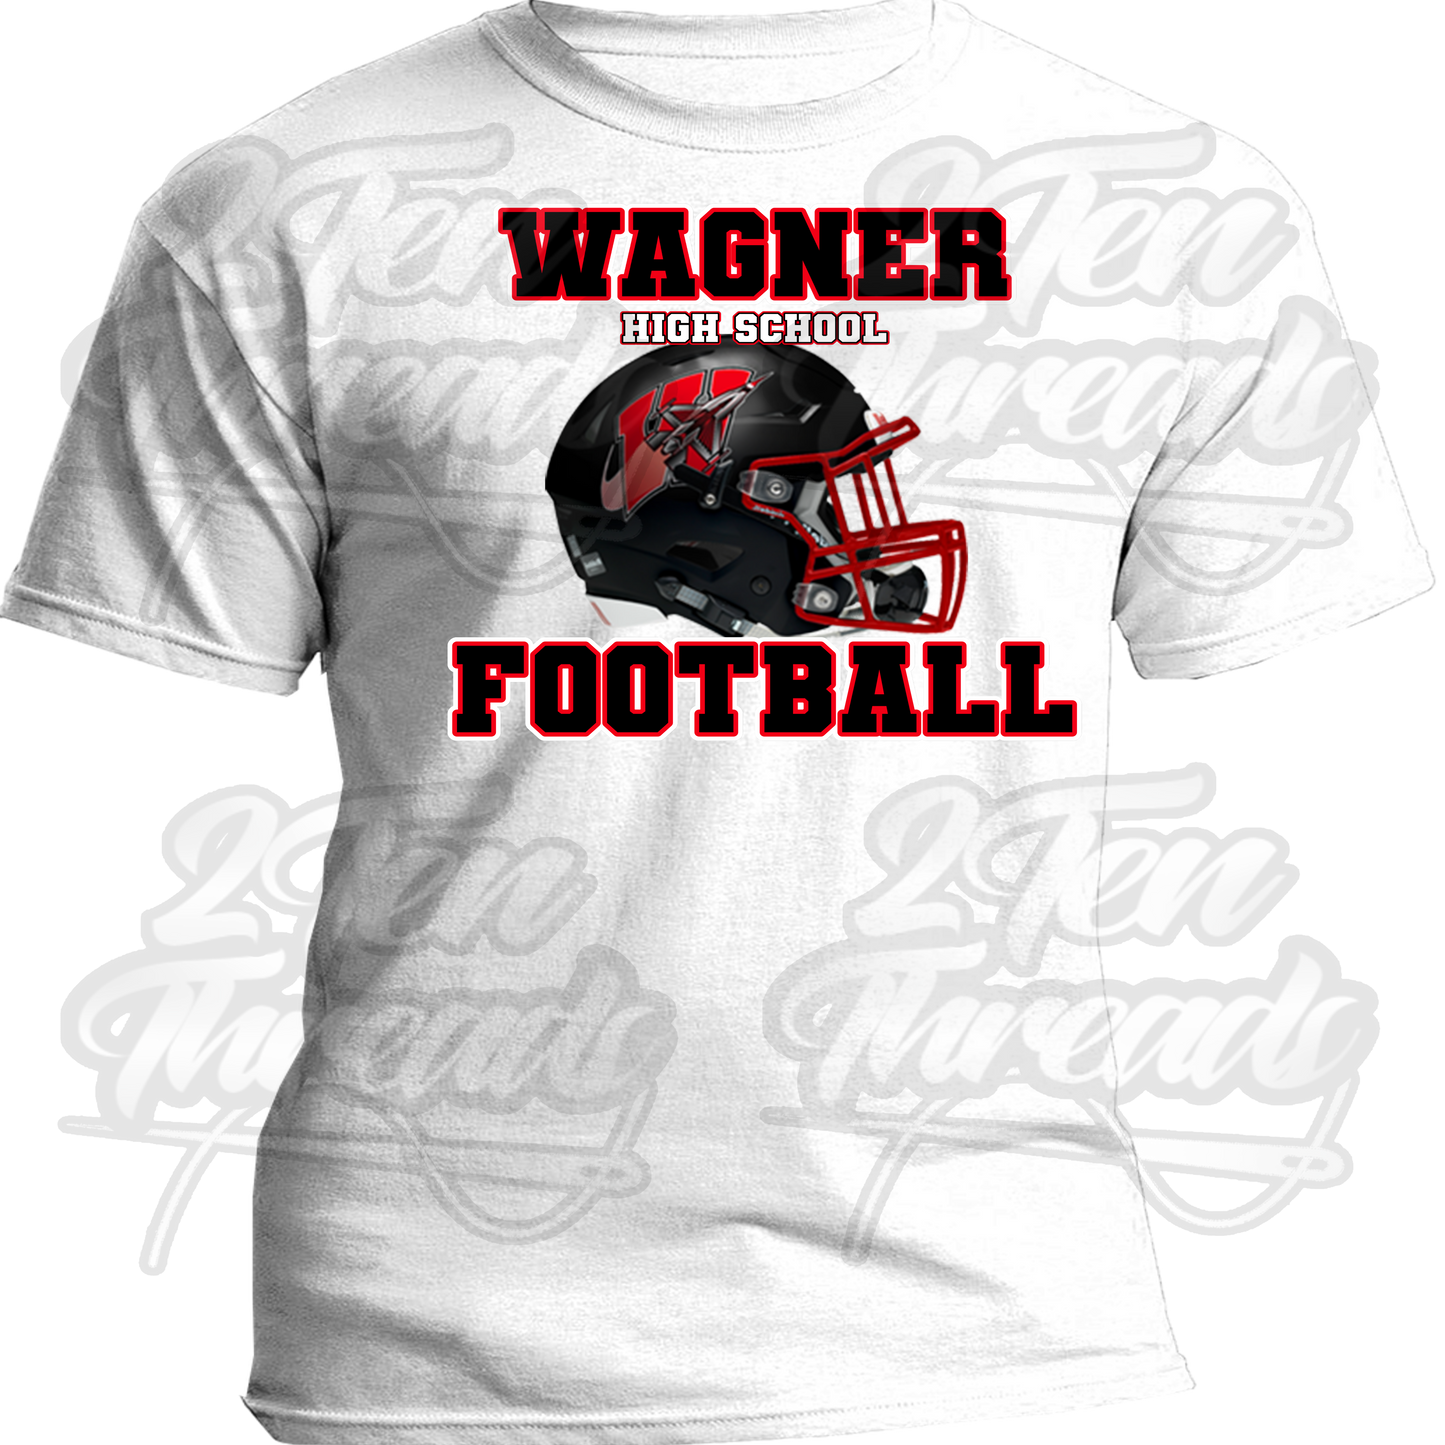 Wagner Helmet shirt!